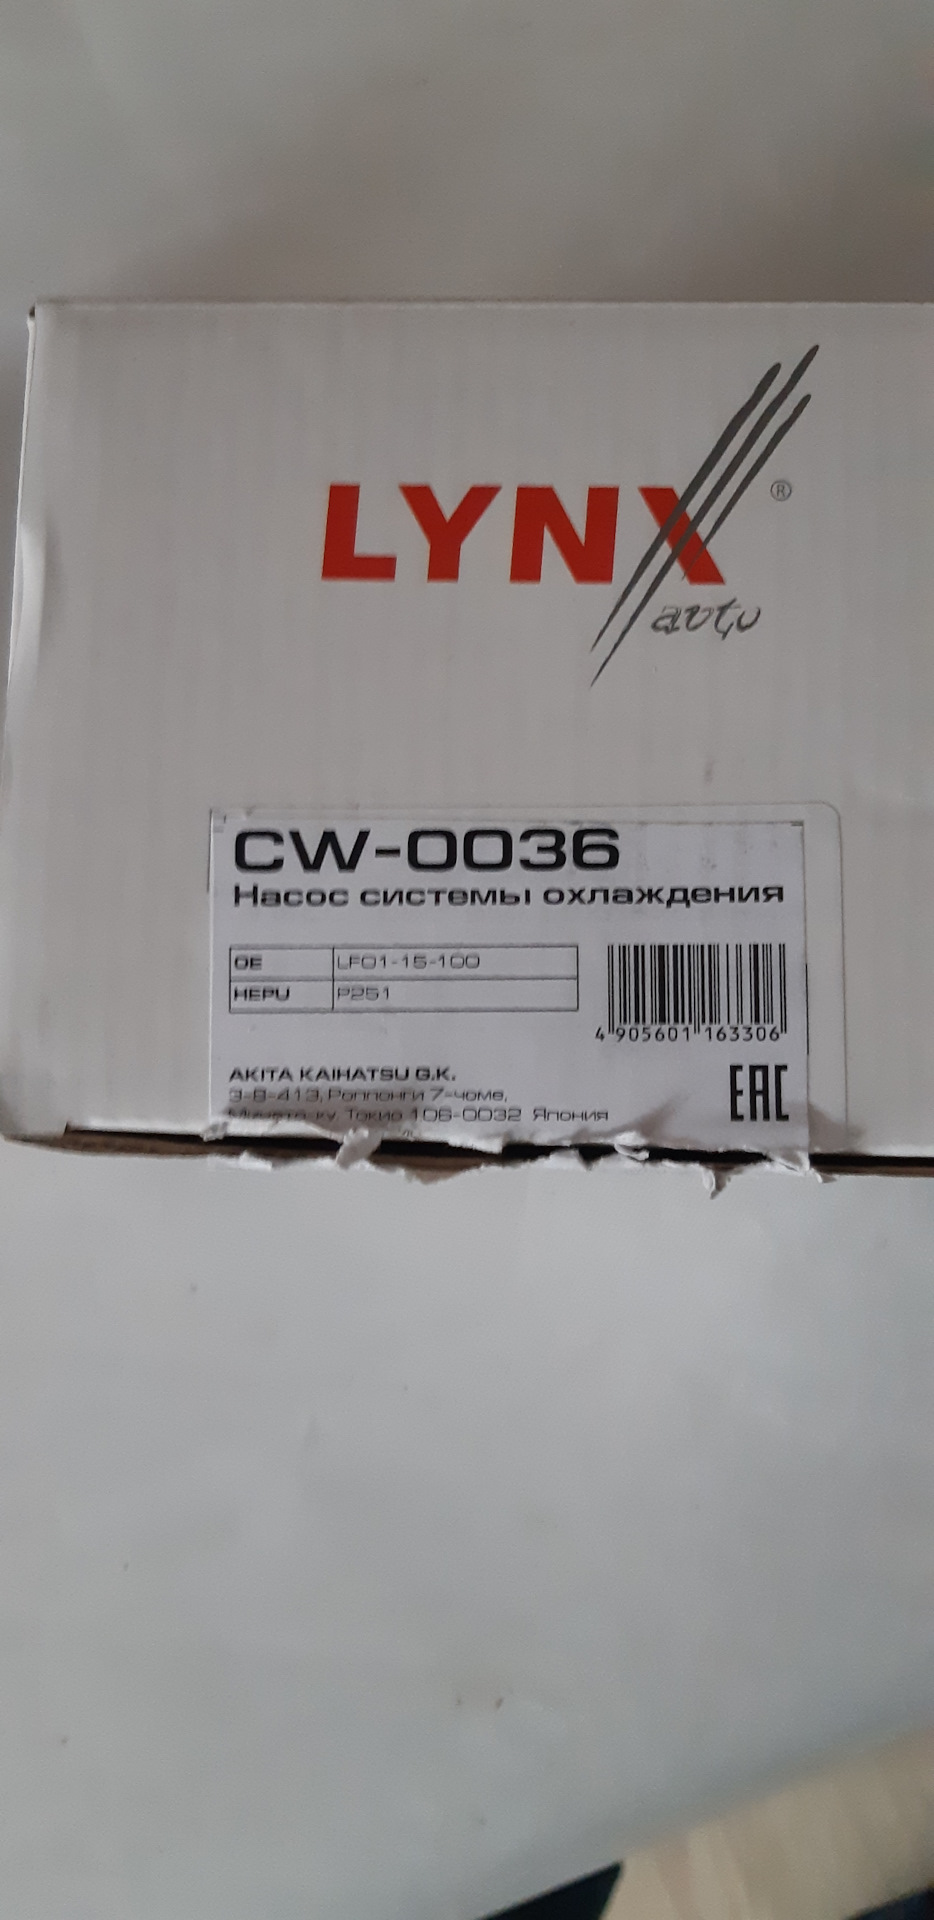 Производитель lynx отзывы. Lynx запчасти отзывы. Фирма Lynx отзывы. 8201022396 Аналог Lynx отзывы. Lynx отзывы о запчастях рычагах.